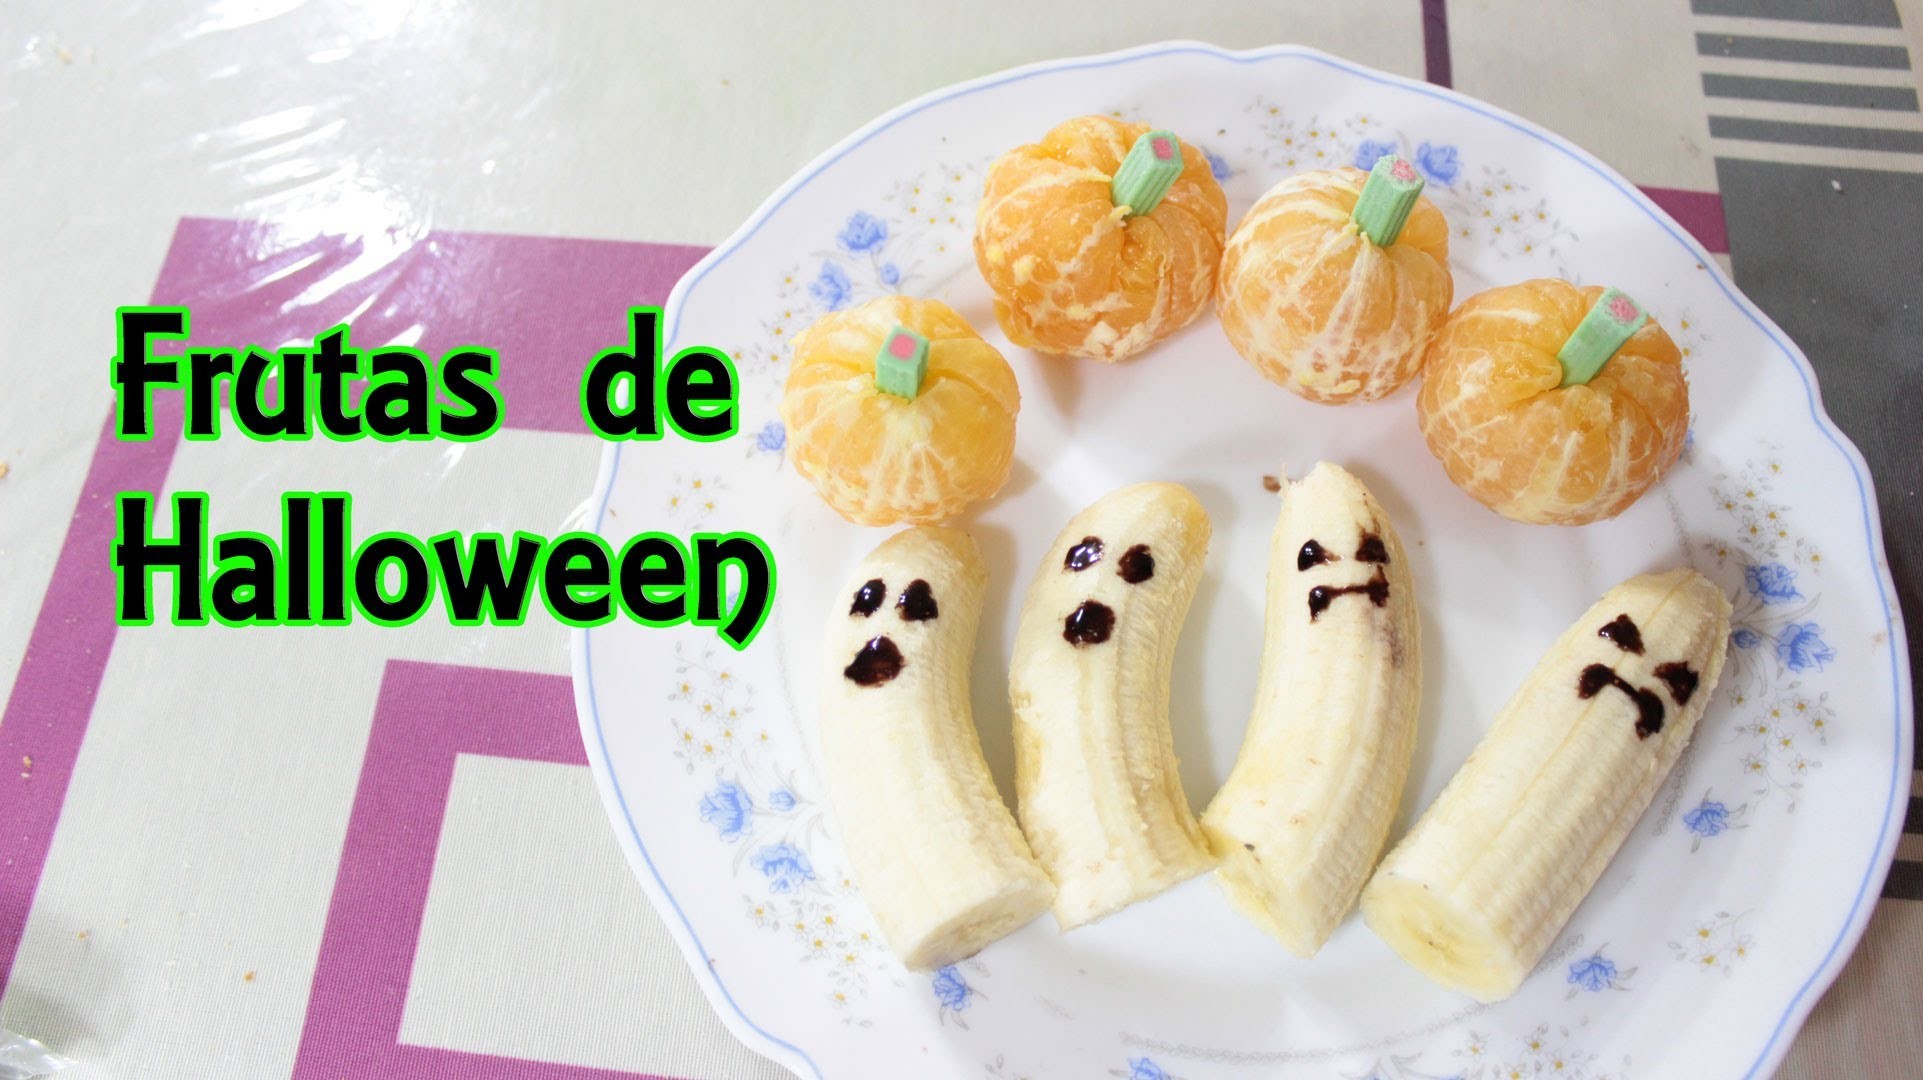 Frutas de Halloween - Recetas de Halloween - Manualidades Fáciles